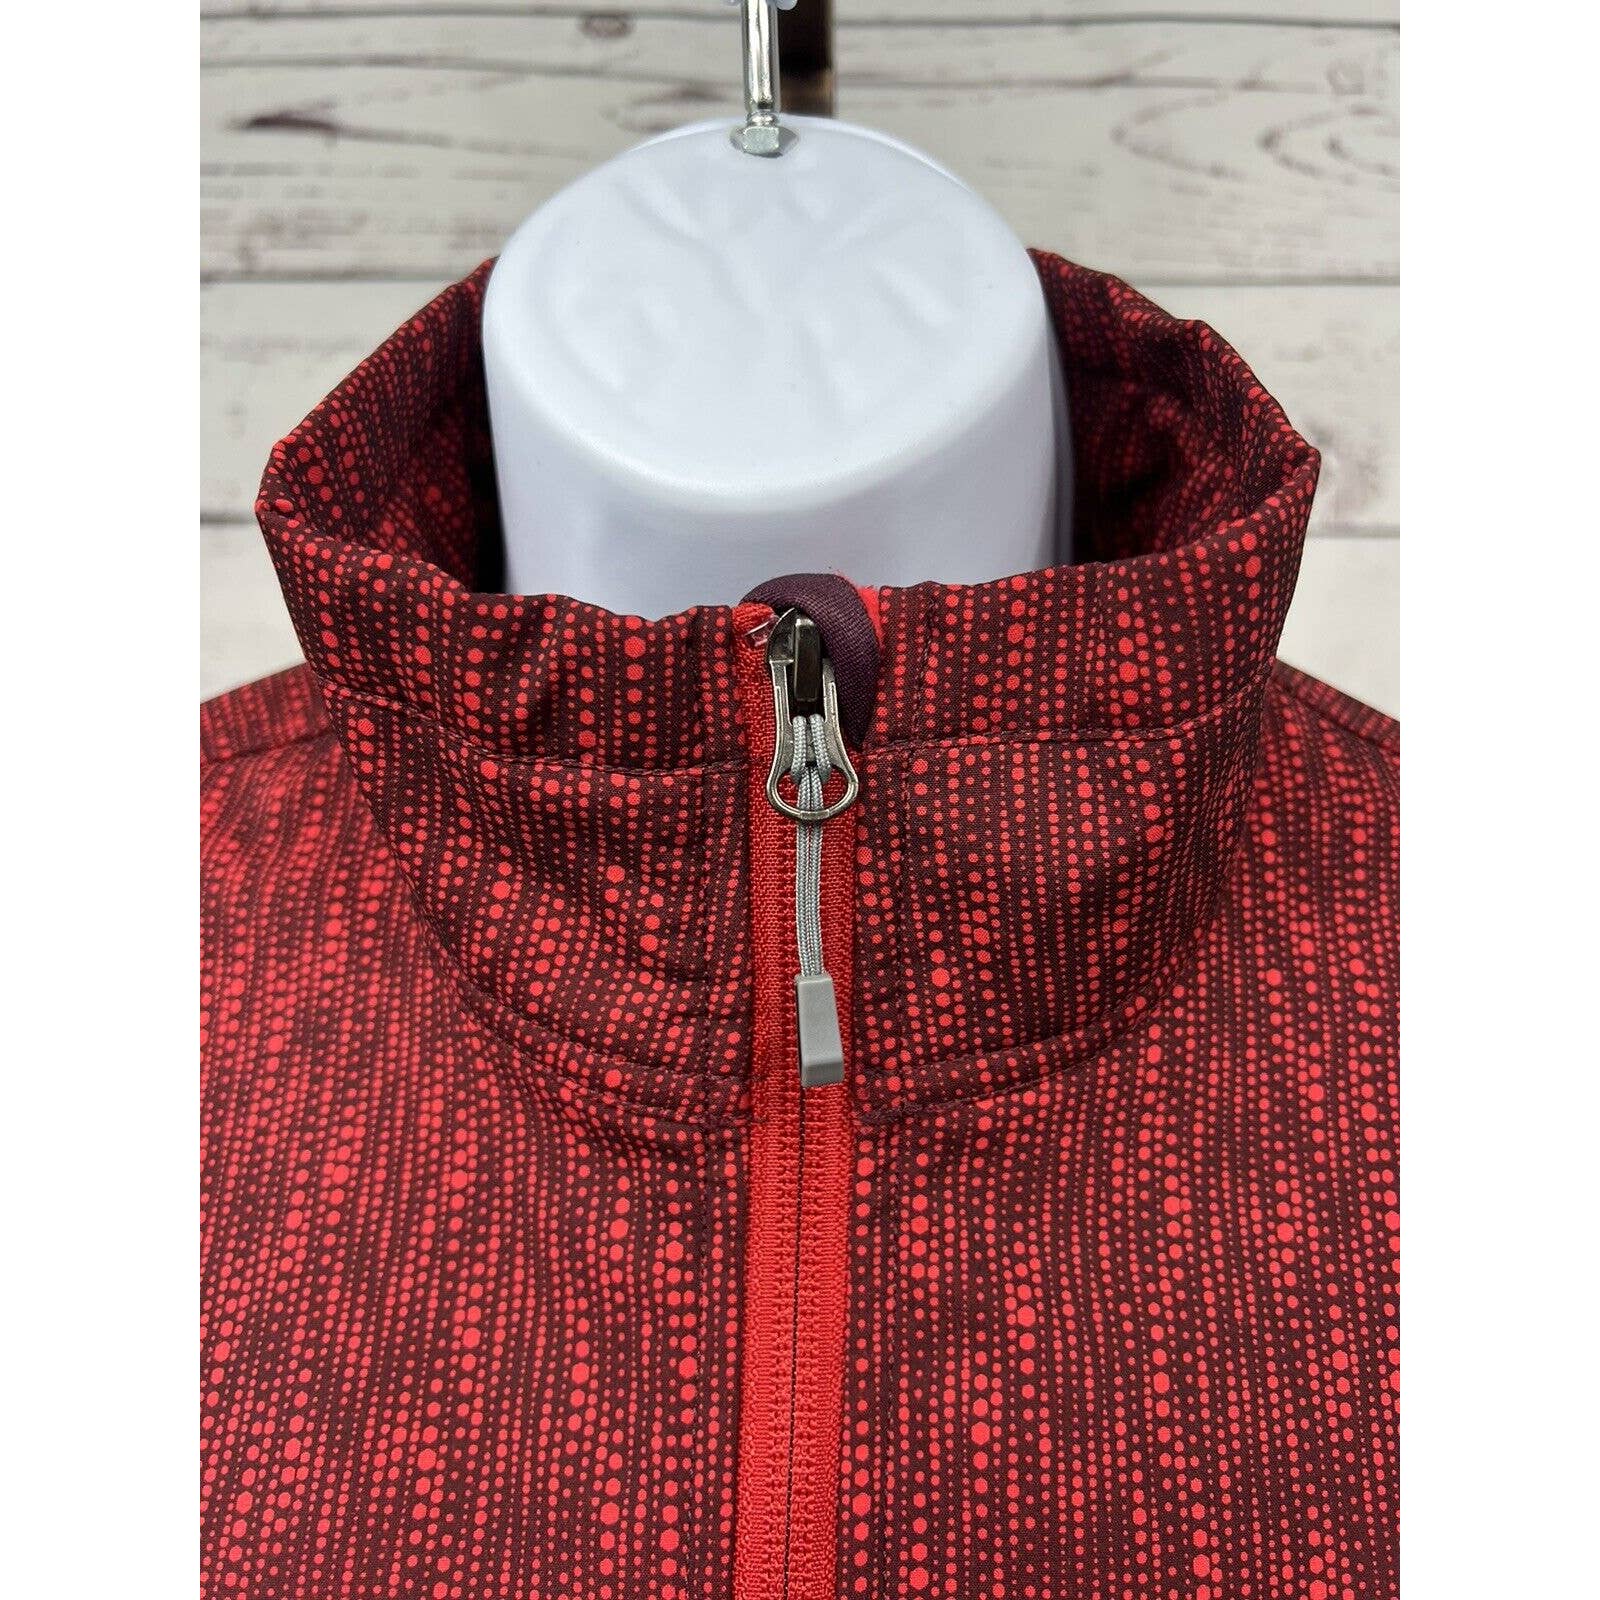 Eddie Bauer Soft Shell Jacket Women’s Small Red Black Fleece Lined Windbreaker